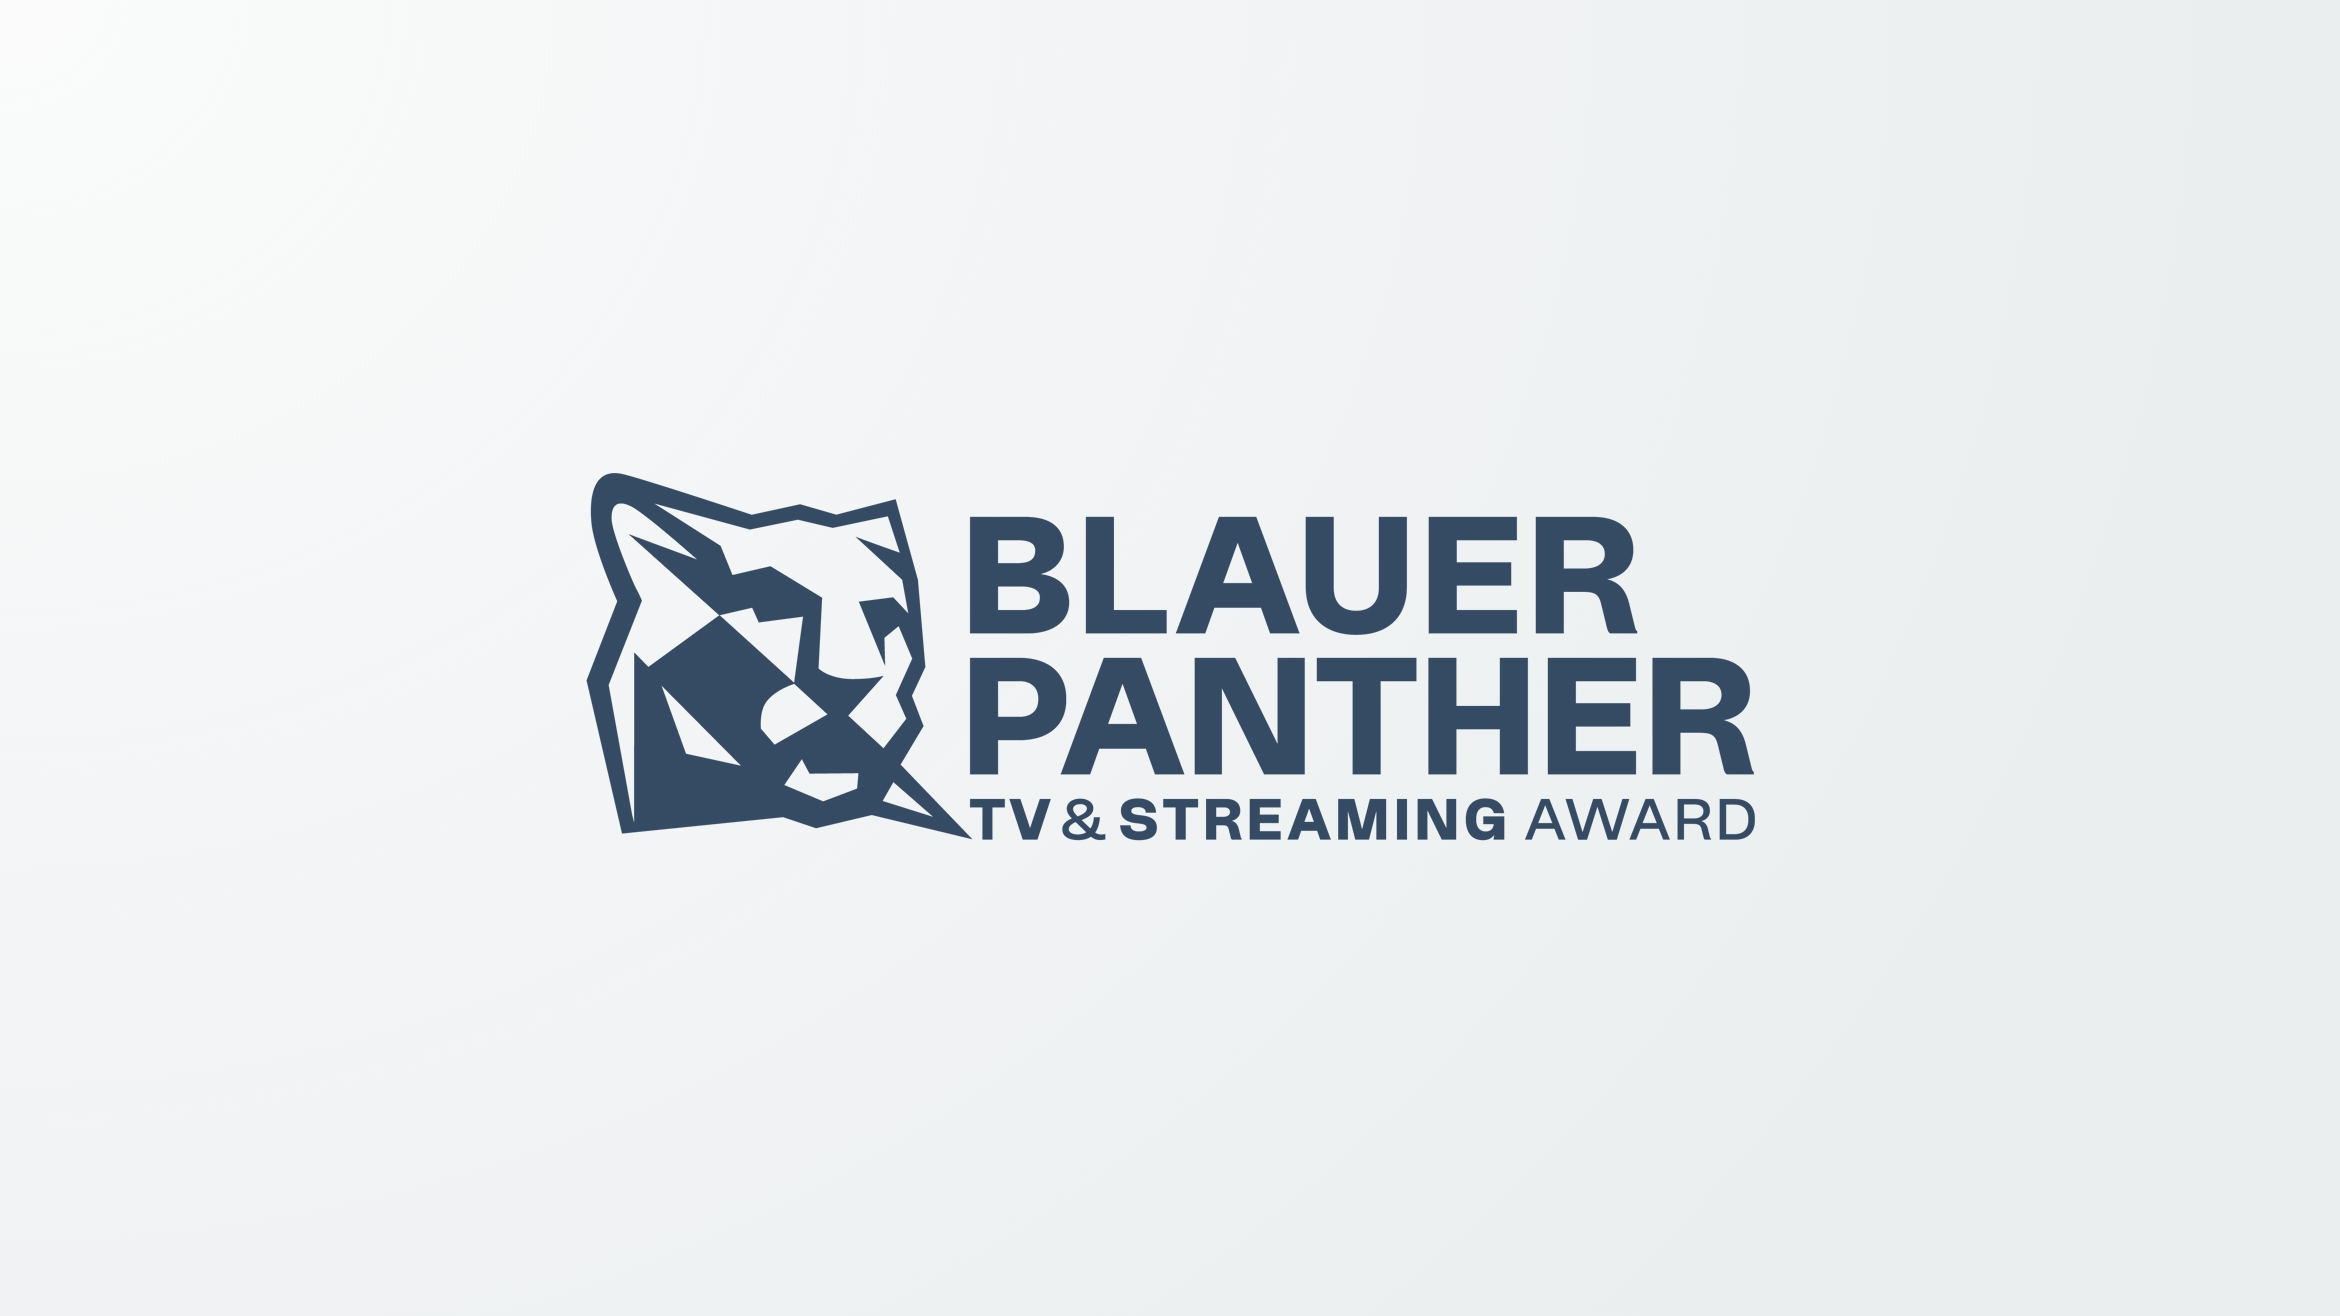 Der Blaue Panther wurde zum ersten Mal als TV- und Streaming-Award vergeben -